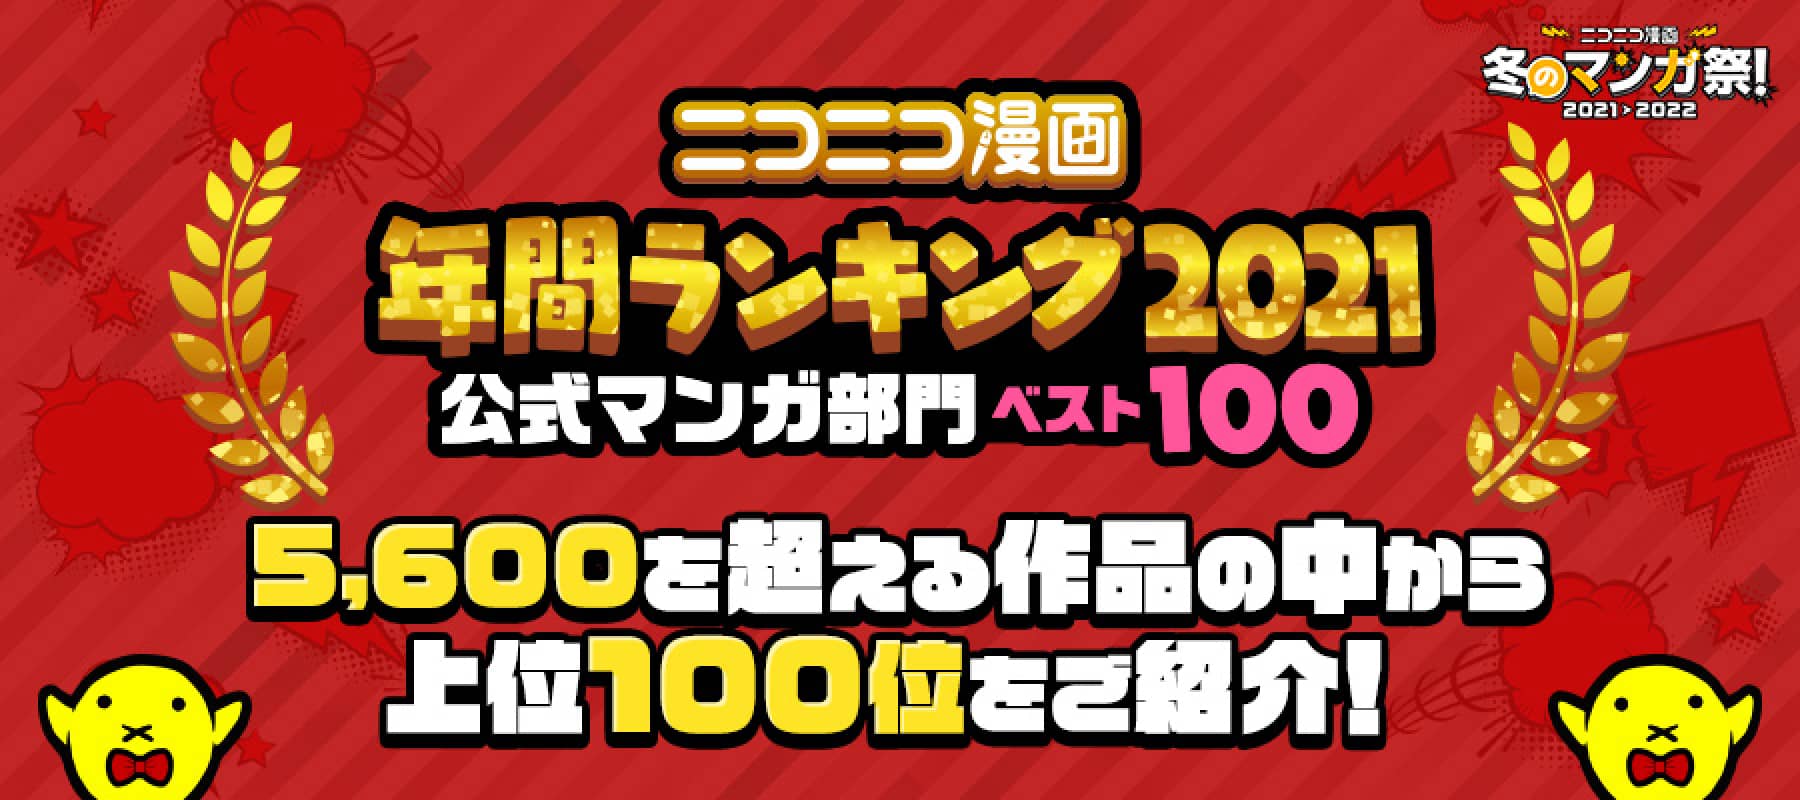 ニコニコ漫画 年間ランキング2021 公式マンガ部門ベスト100